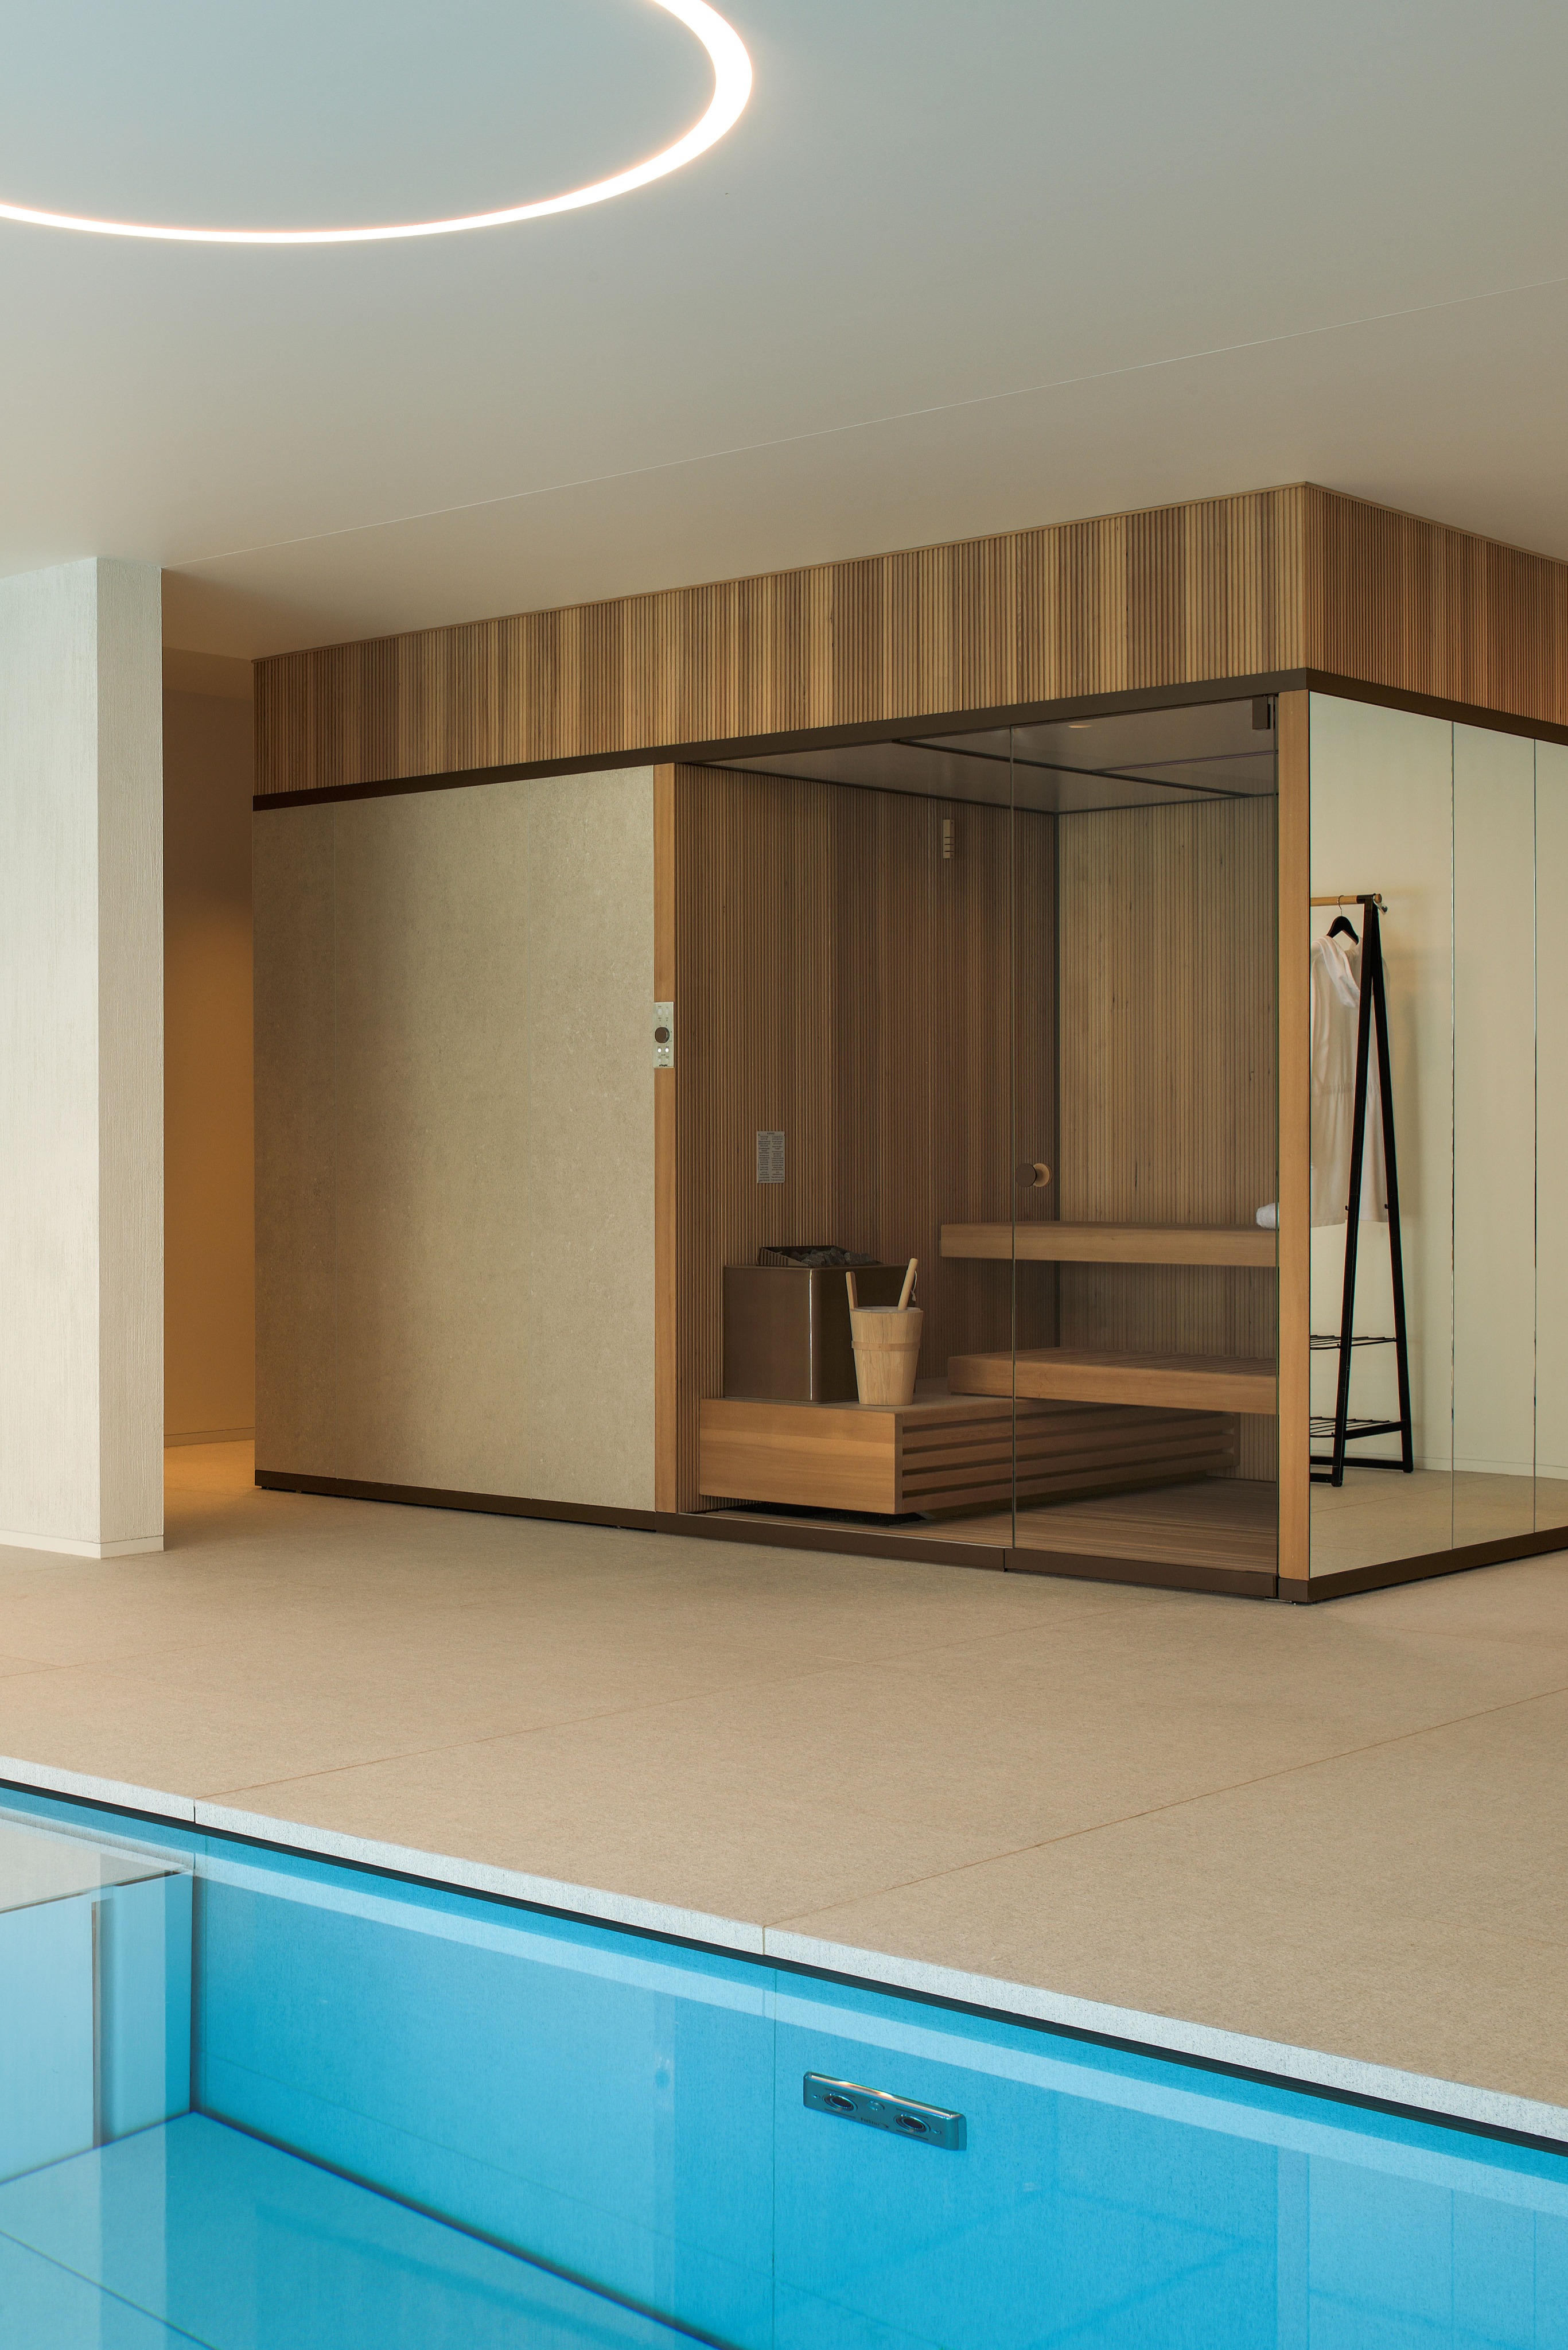 sauna-op-maat-bij-hanolux-turnhout.jpg